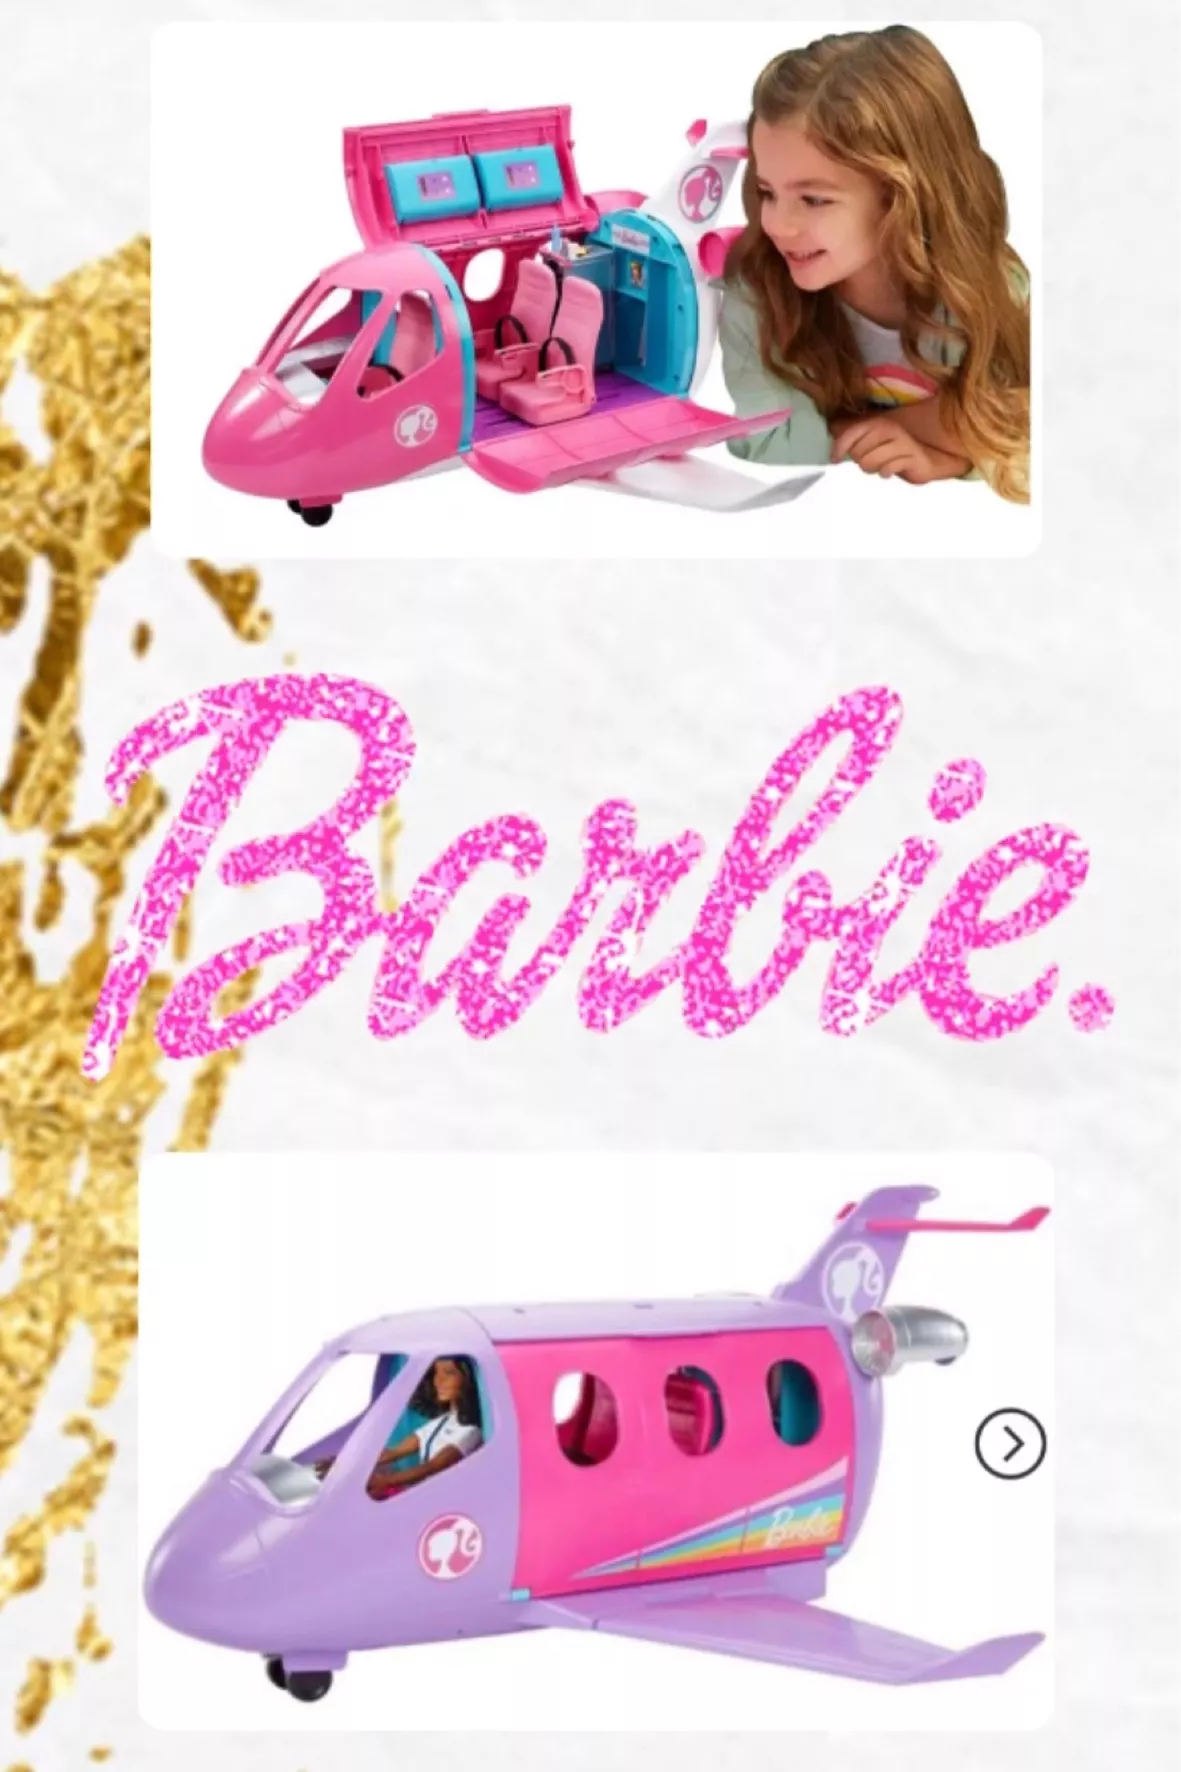 Barbie - Airplane Adventures Playset